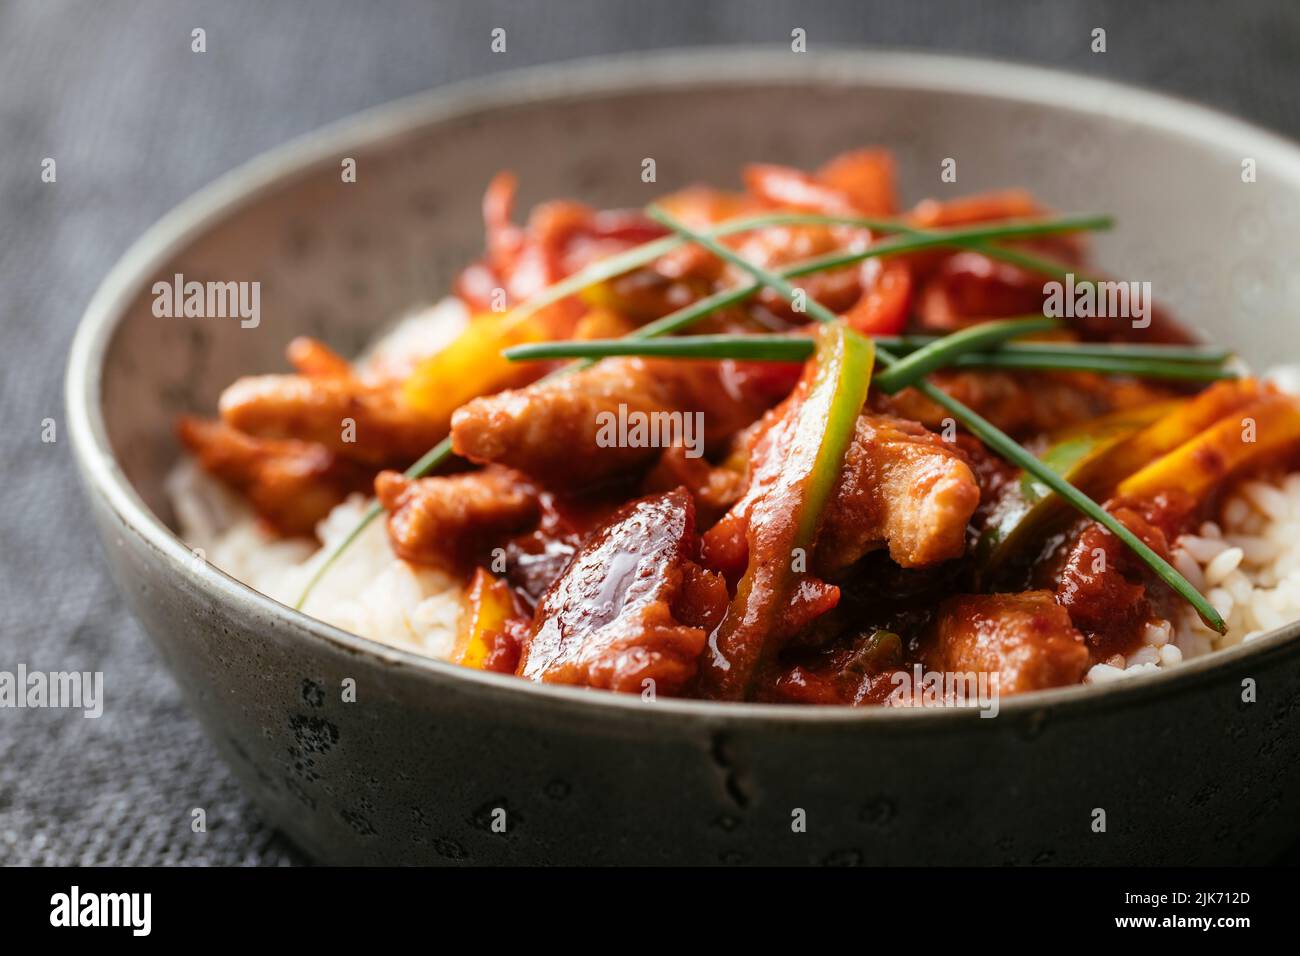 Proteina vegetale testurizzata (TVP) con salsa di susina cinese piccante con peperoni sul riso. Foto Stock